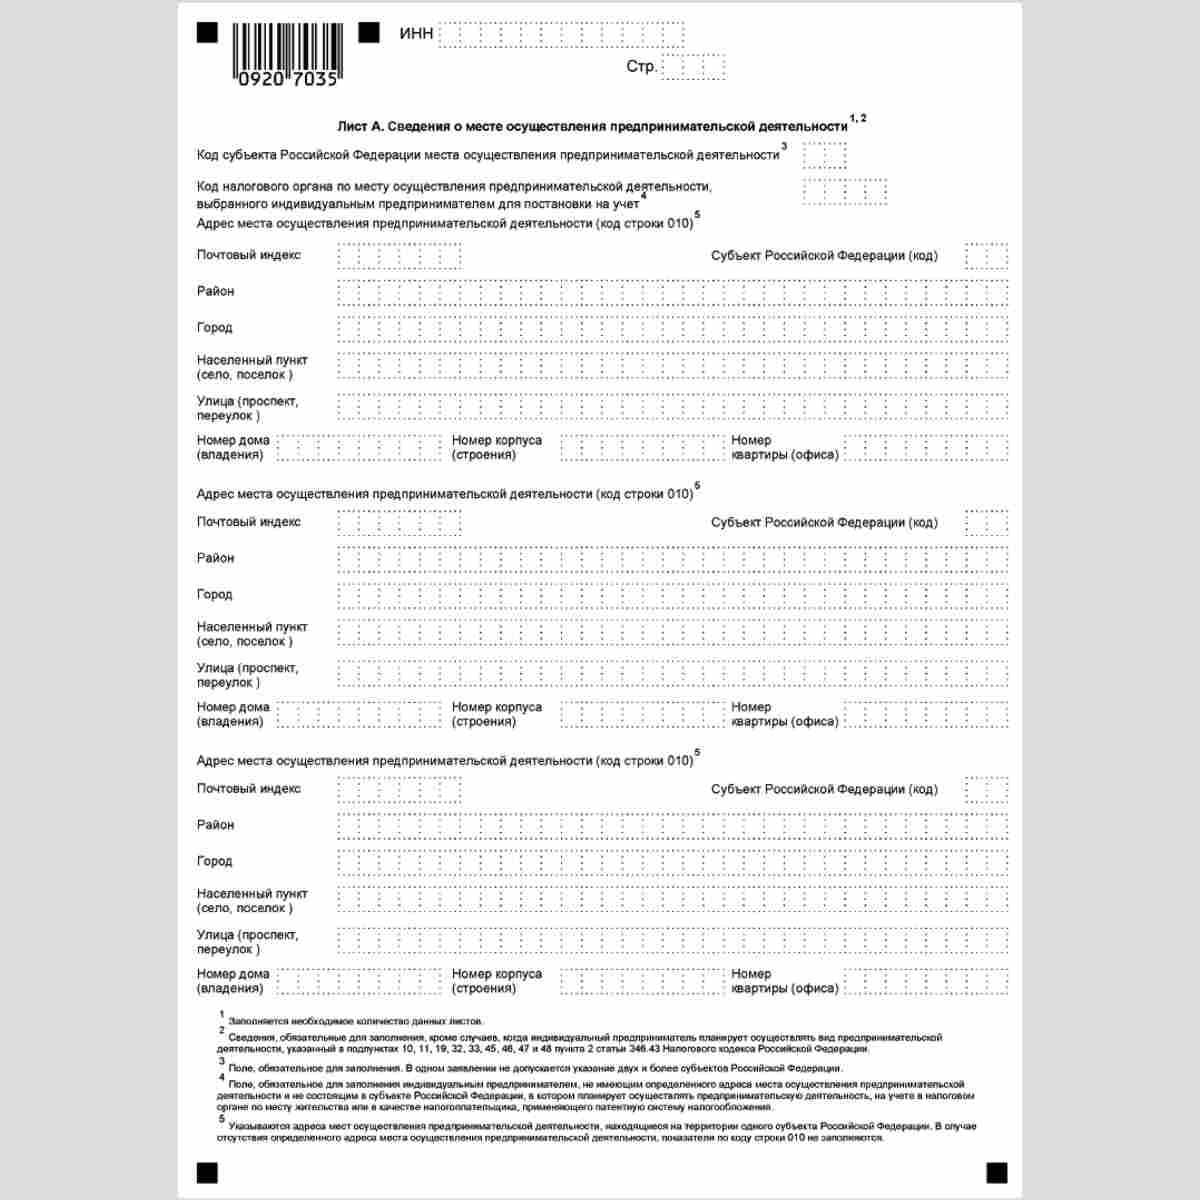 Форма КНД 1150010 "Заявление на получение патента" (Форма 26.5-1). Лист А